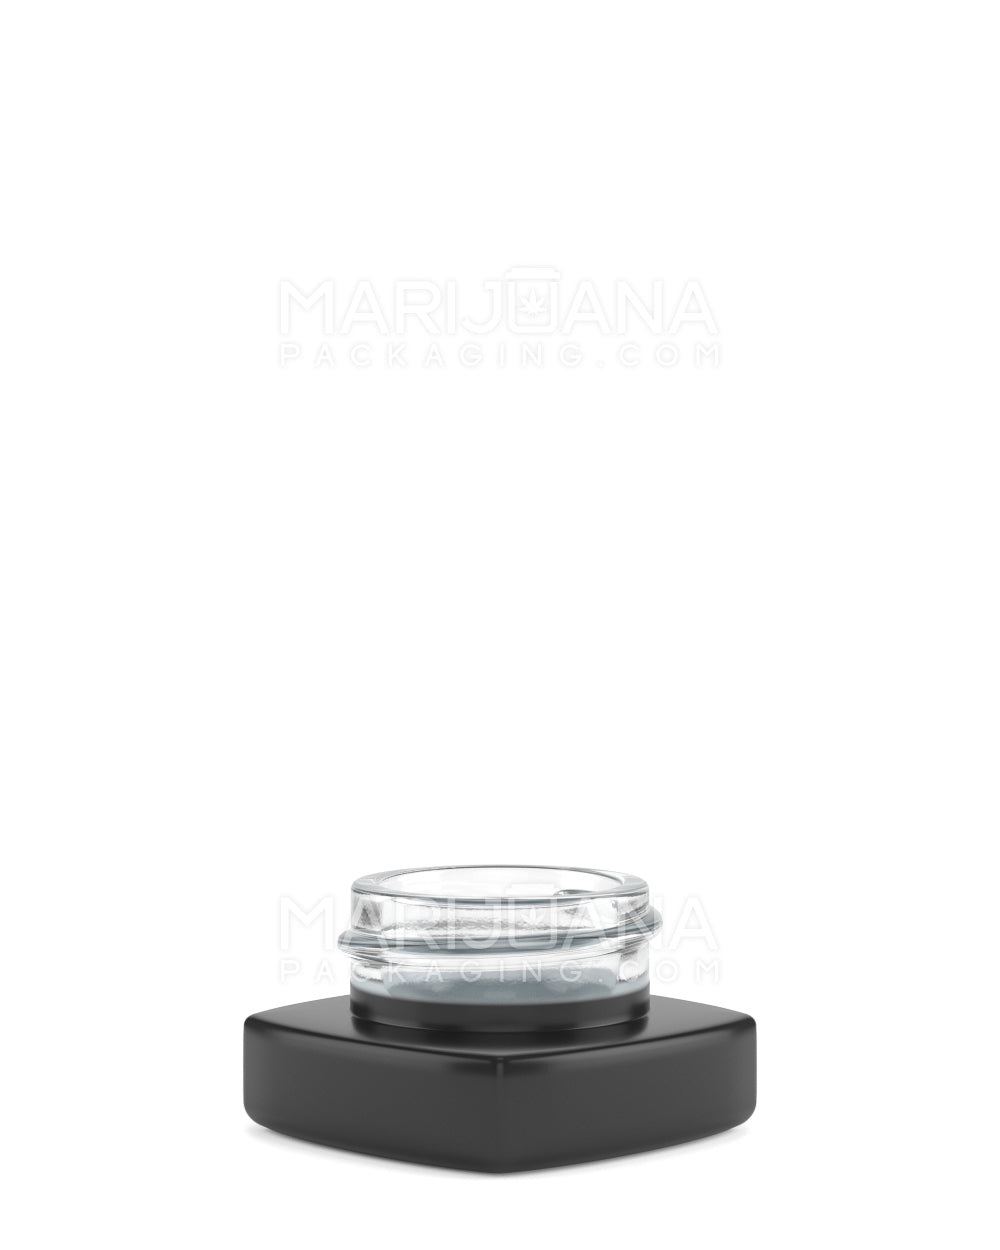 Bulk Empty Premium Glass Jars for Dabs - 5ml - Ghost Vapors